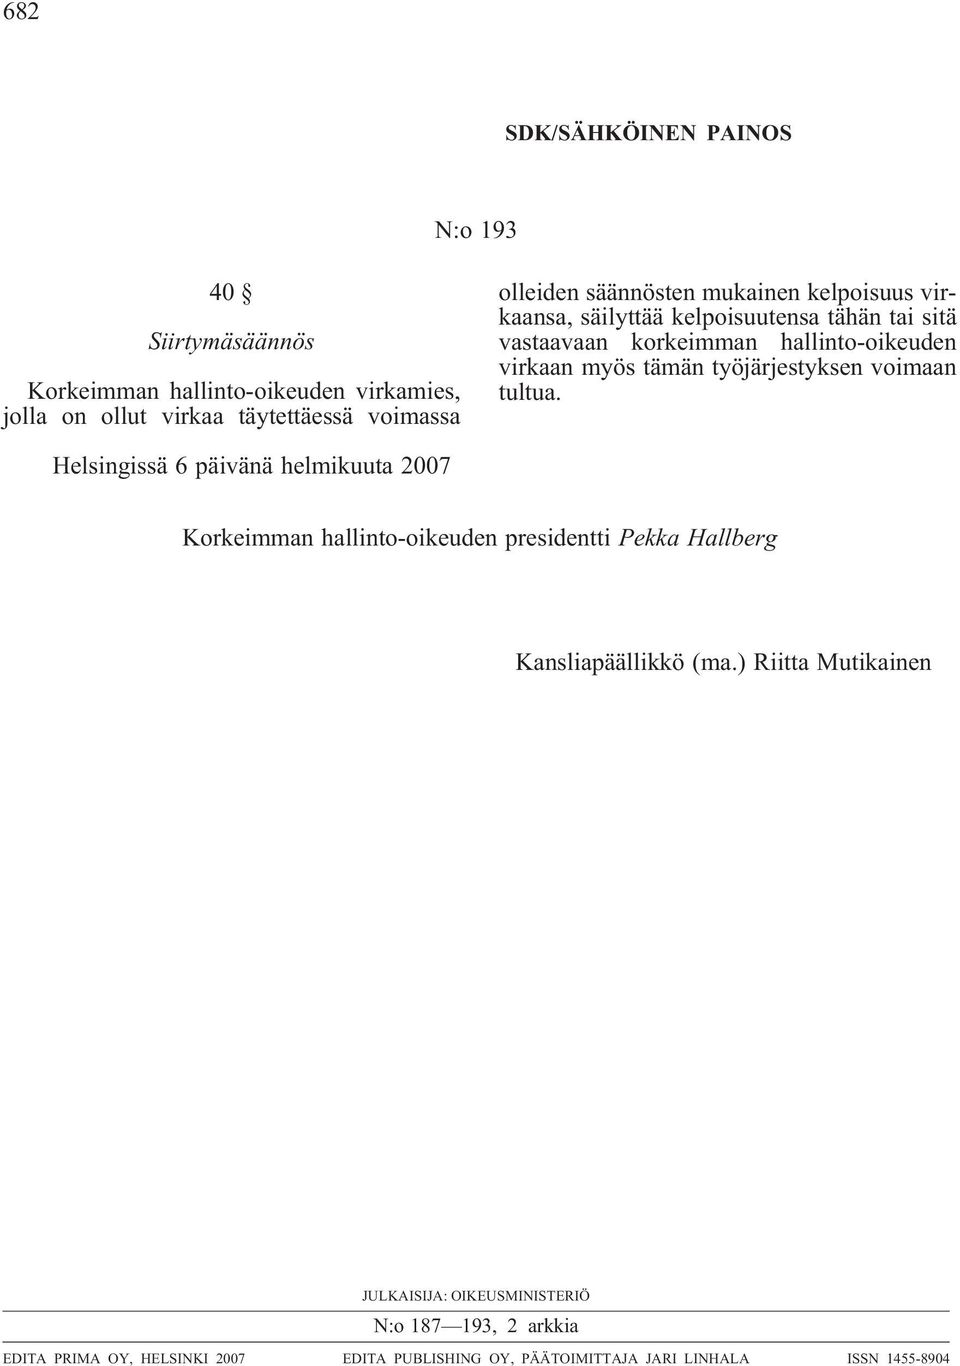 työjärjestyksen voimaan tultua. Helsingissä 6 päivänä helmikuuta 2007 Korkeimman hallinto-oikeuden presidentti Pekka Hallberg Kansliapäällikkö (ma.